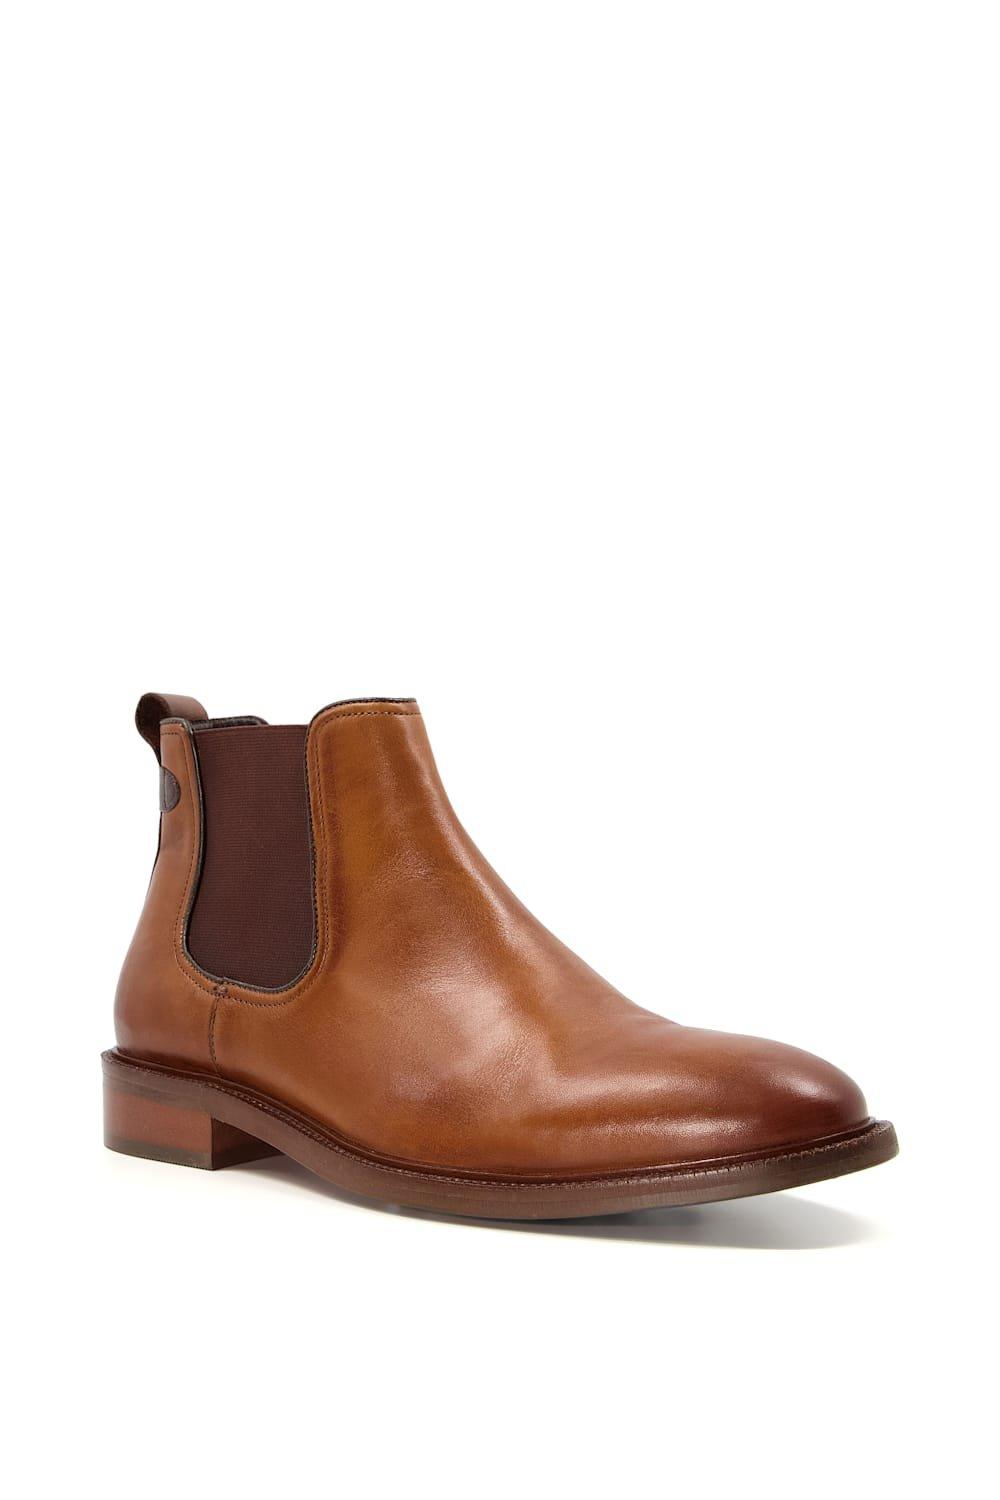 Pèpè Dune leather boots - Brown